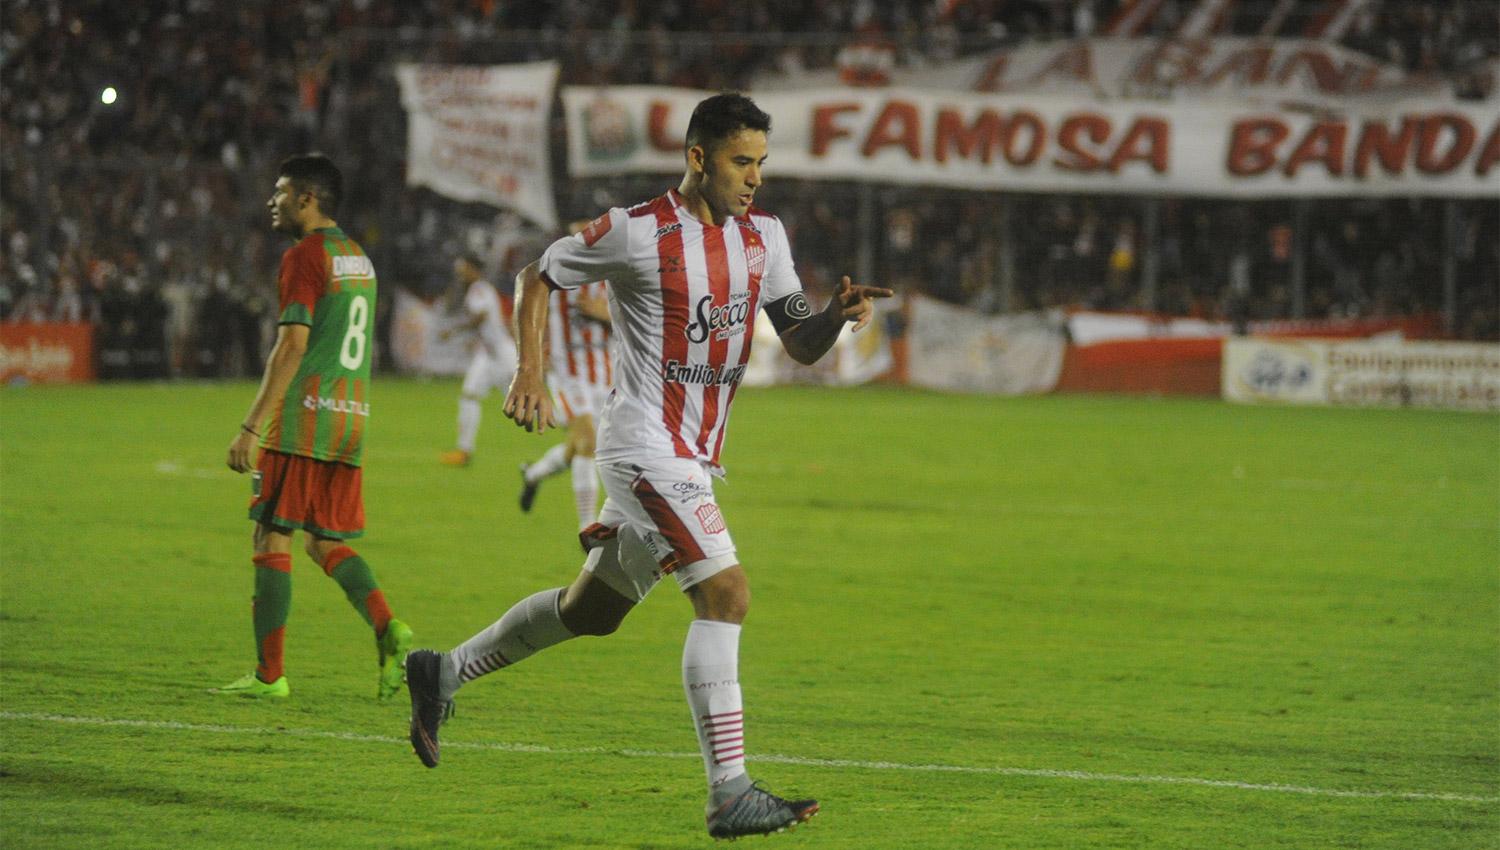 LA ÚLTIMA VEZ. San Martín goleó a Agropecuario en La Ciudadela, por la fecha 22 de la B Nacional. (ARCHIVO LA GACETA)